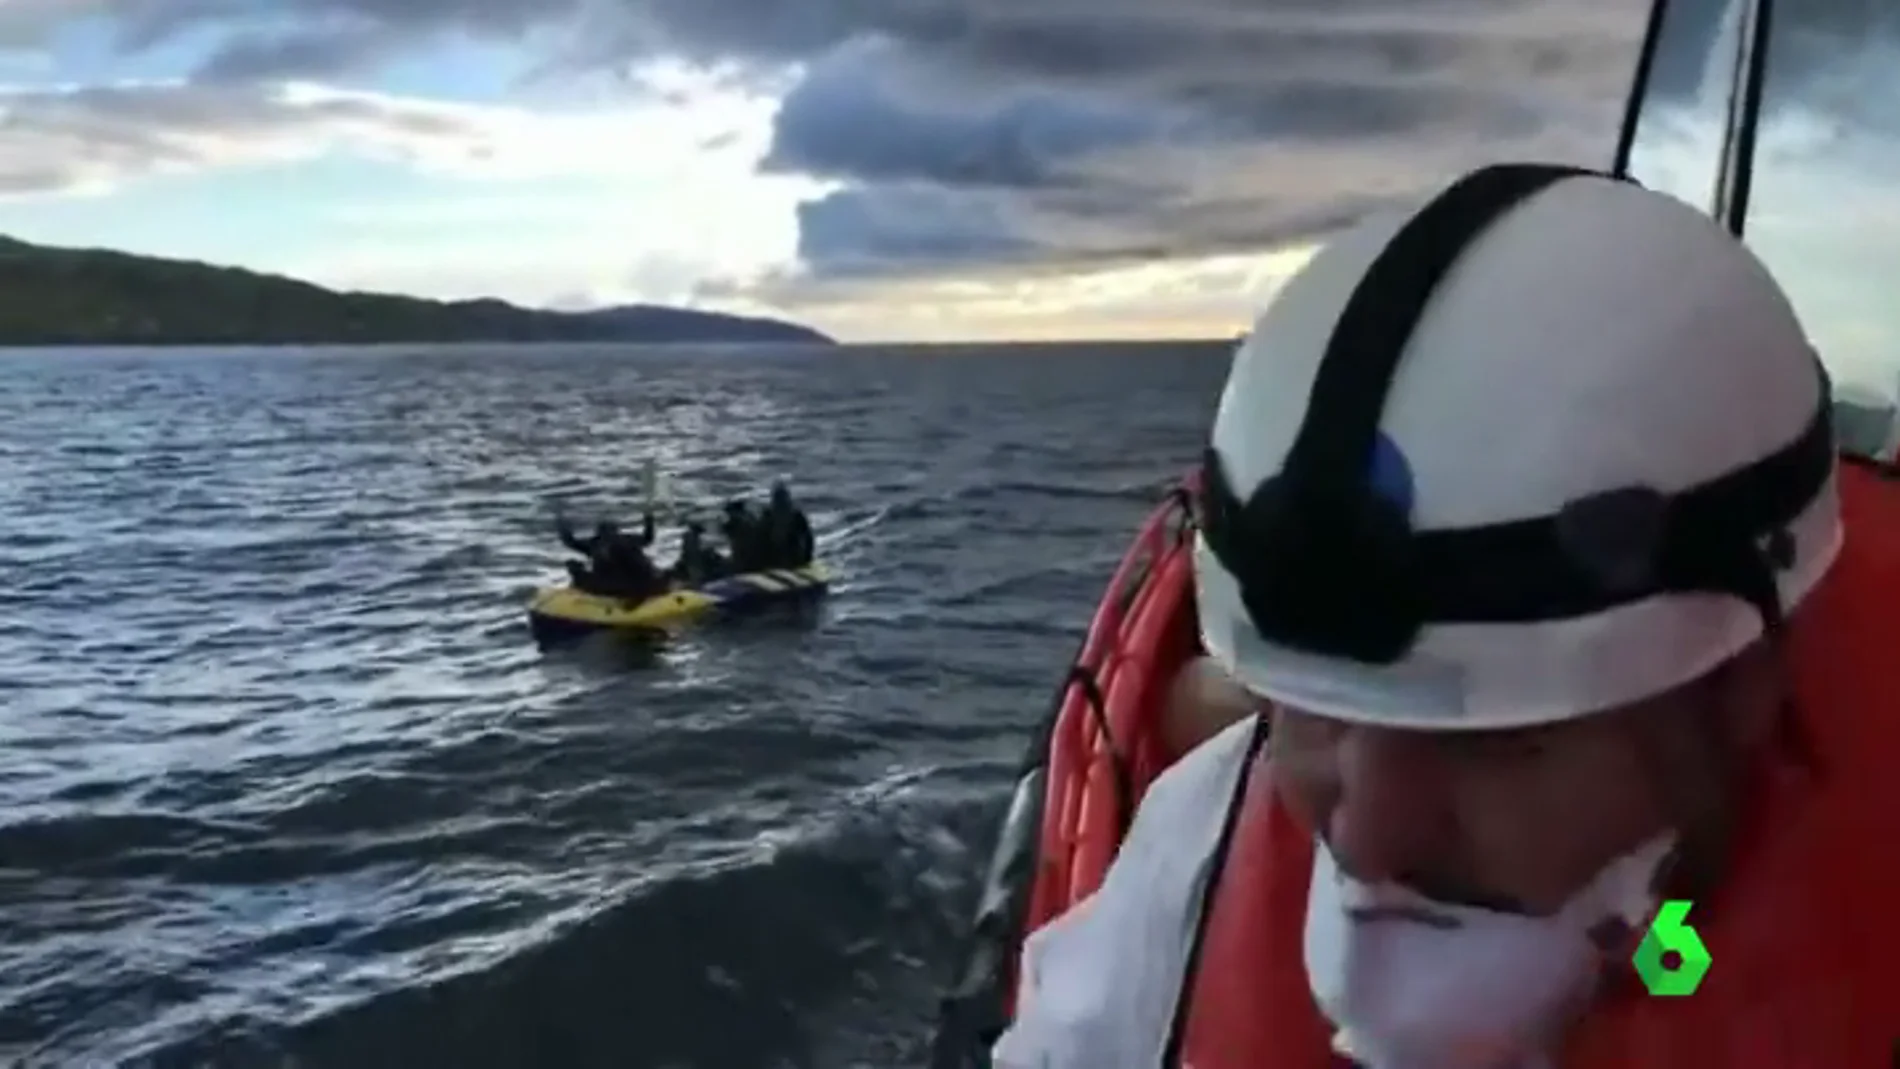 Salvamento Maritimo rescata a cinco personas que cruzaban el Estrecho en una lancha de juguete